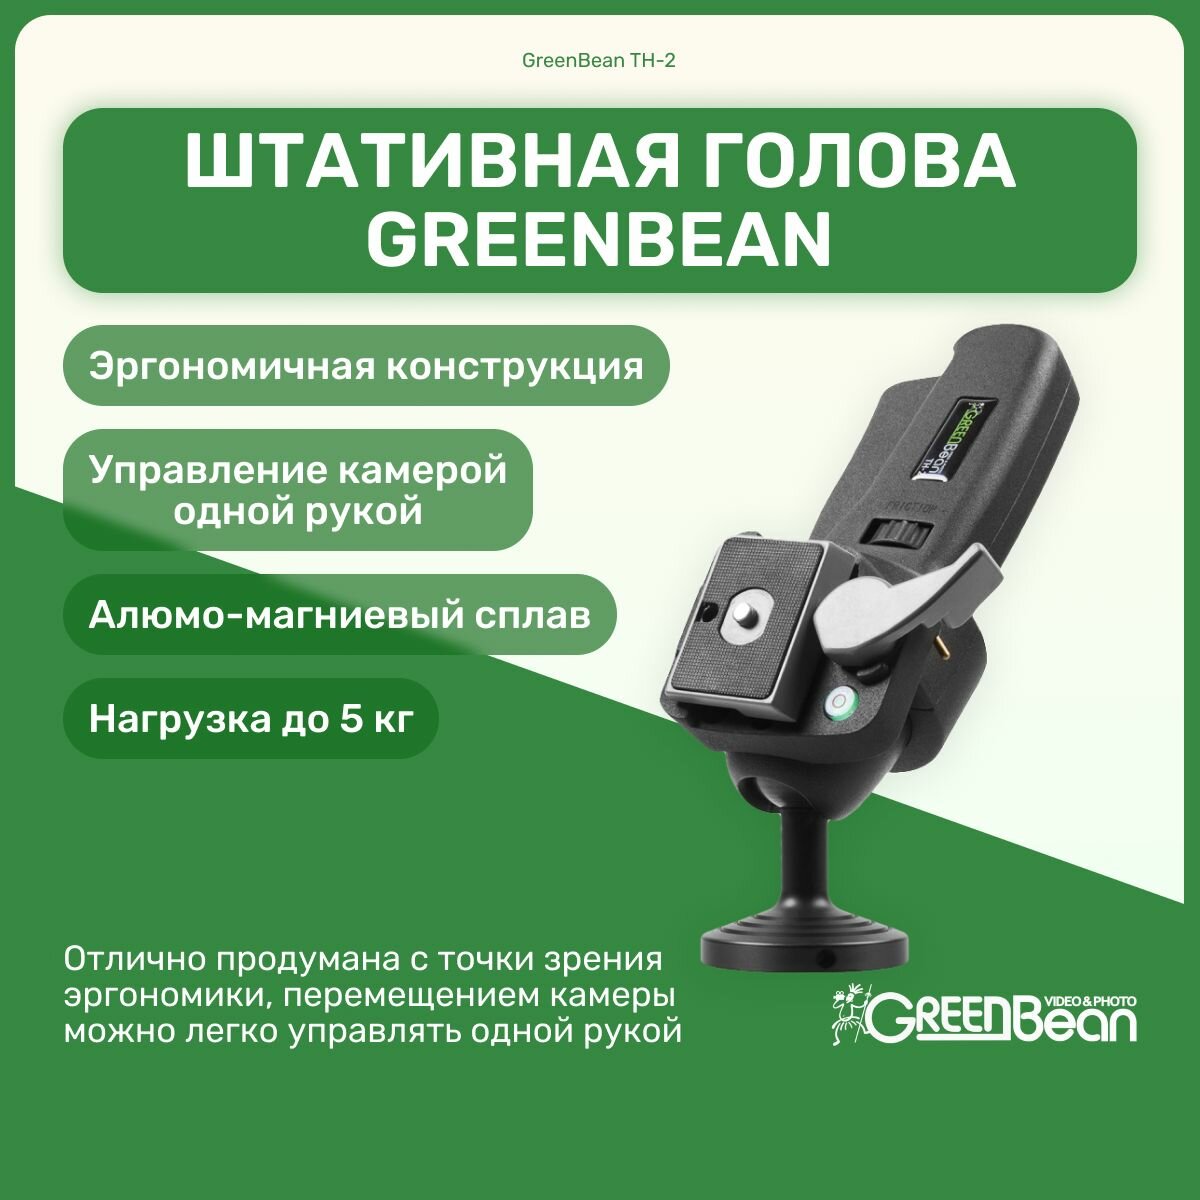 Штативная голова GreenBean TH-2 эргономическая, для управления одной рукой, металлическая, оборудование для фото и видео съемок